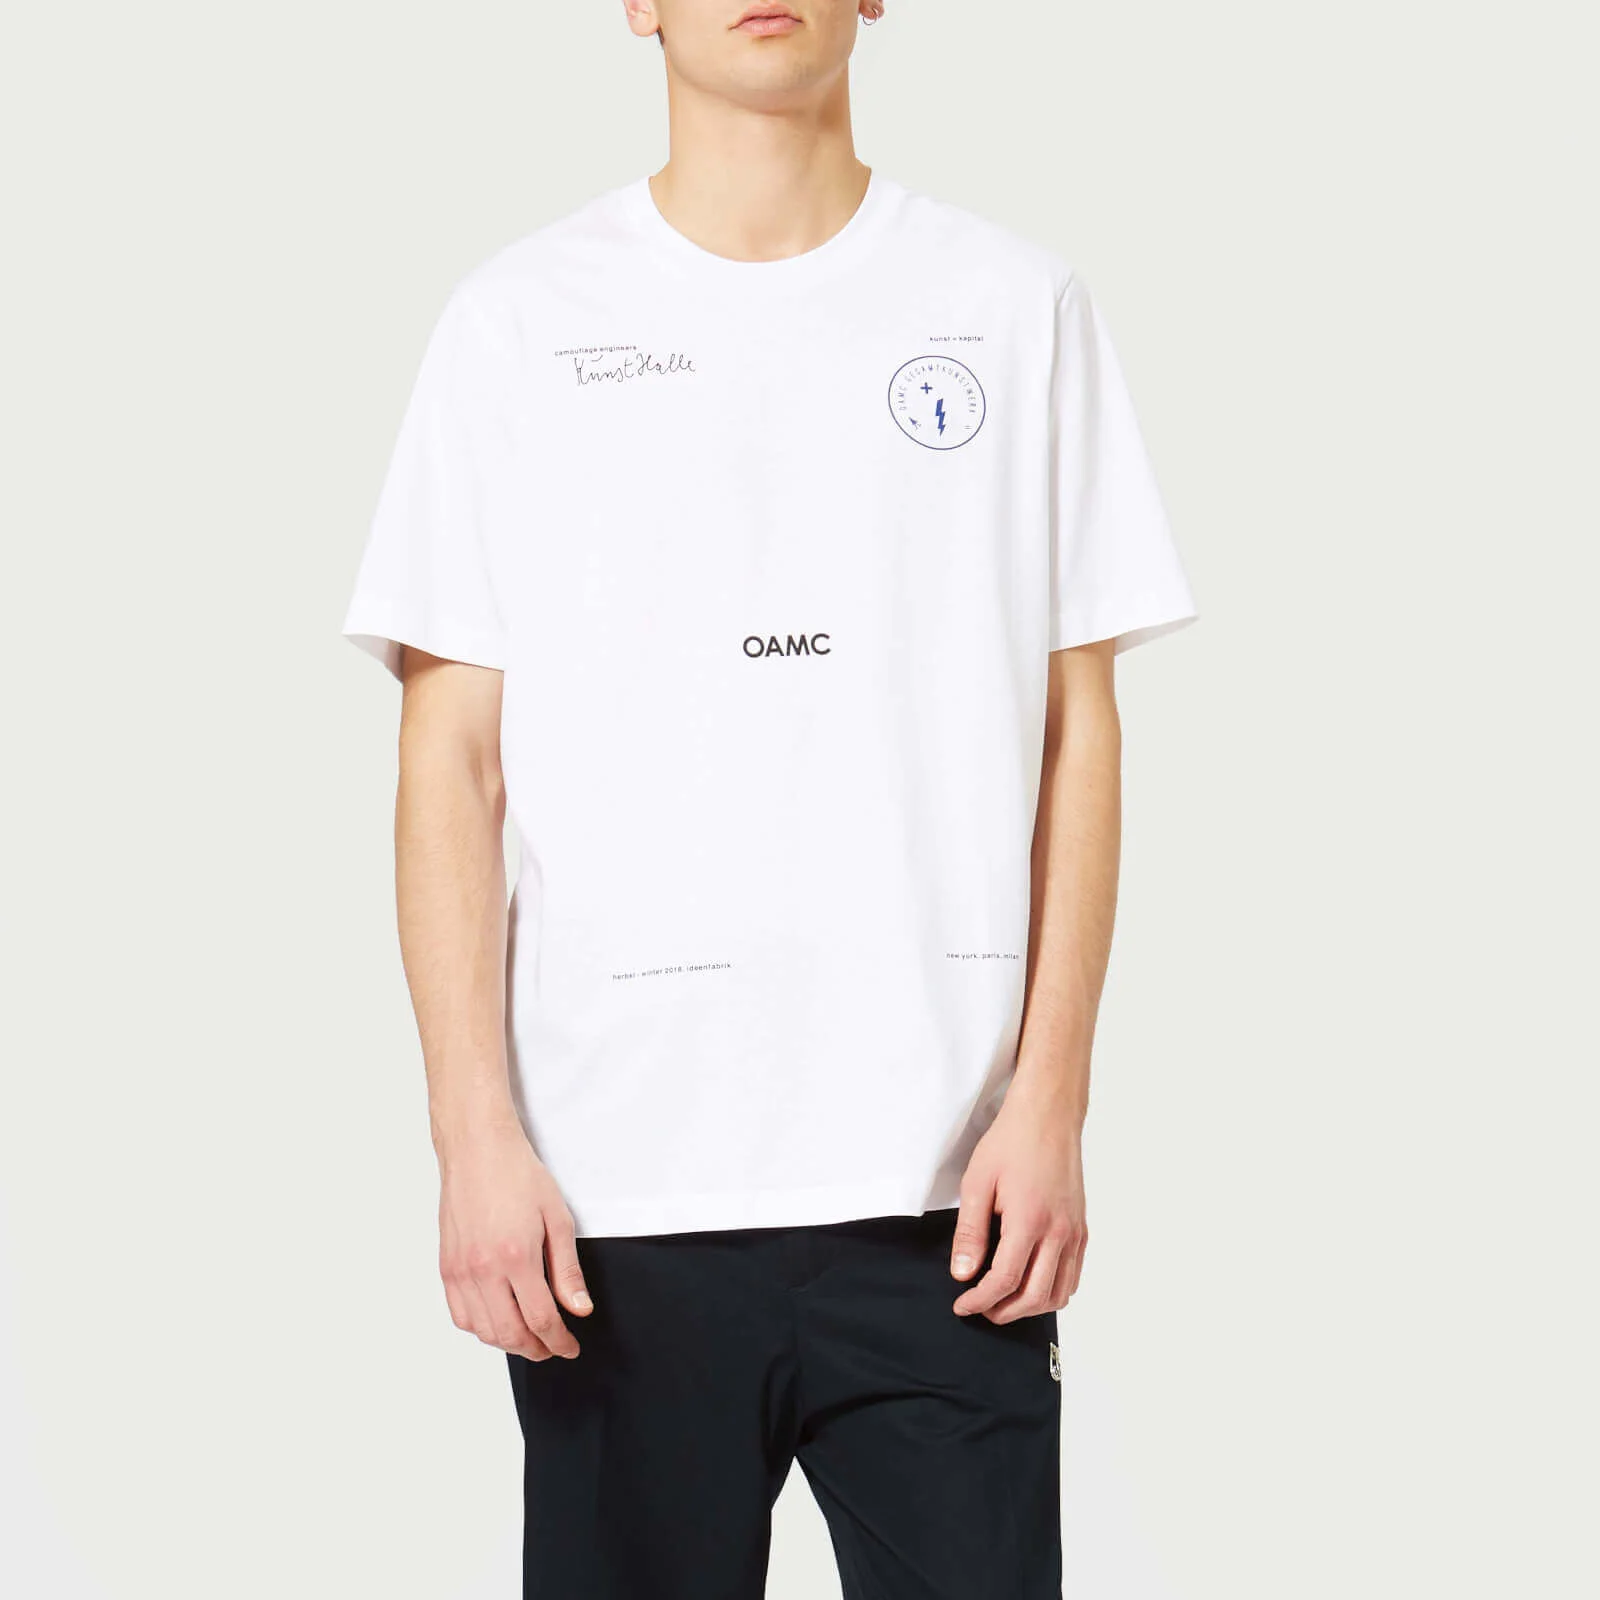 OAMC Men's Kunsthalle T-Shirt - White Image 1